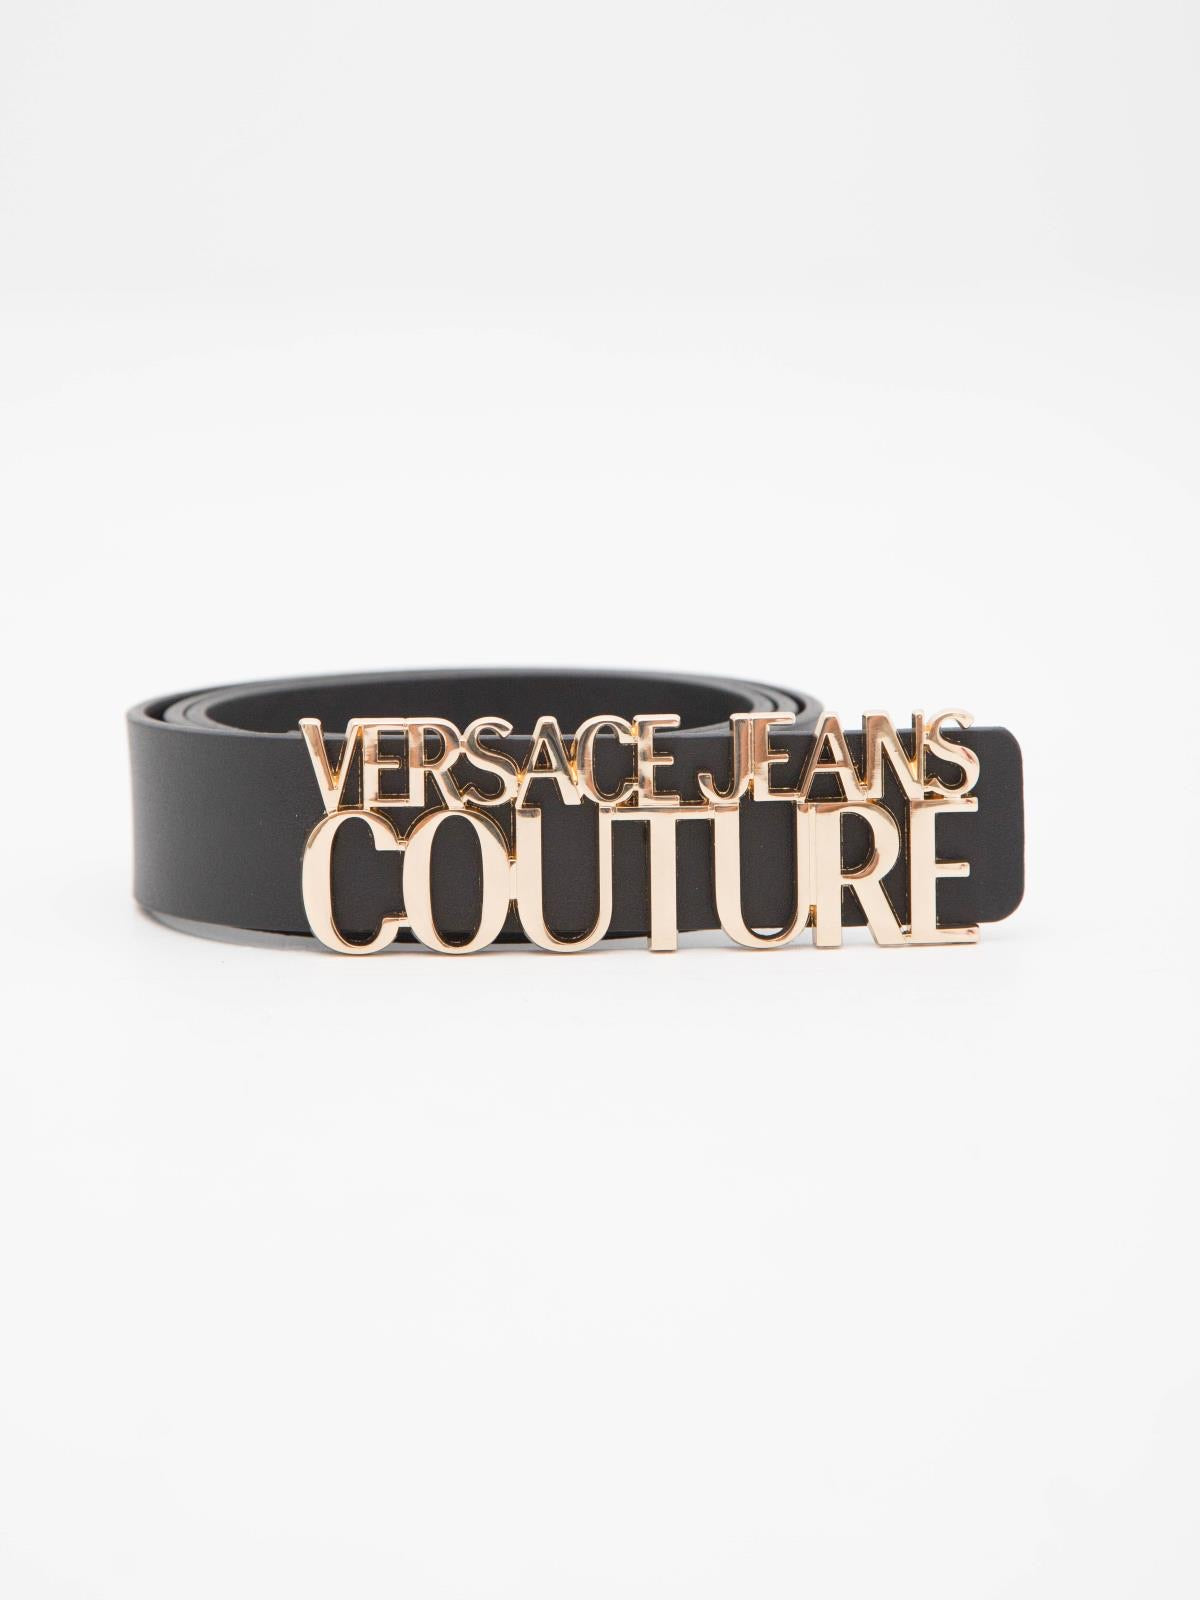 Versace jeans couture cinture donna dis 9 cinturon mujer piel hebilla logo